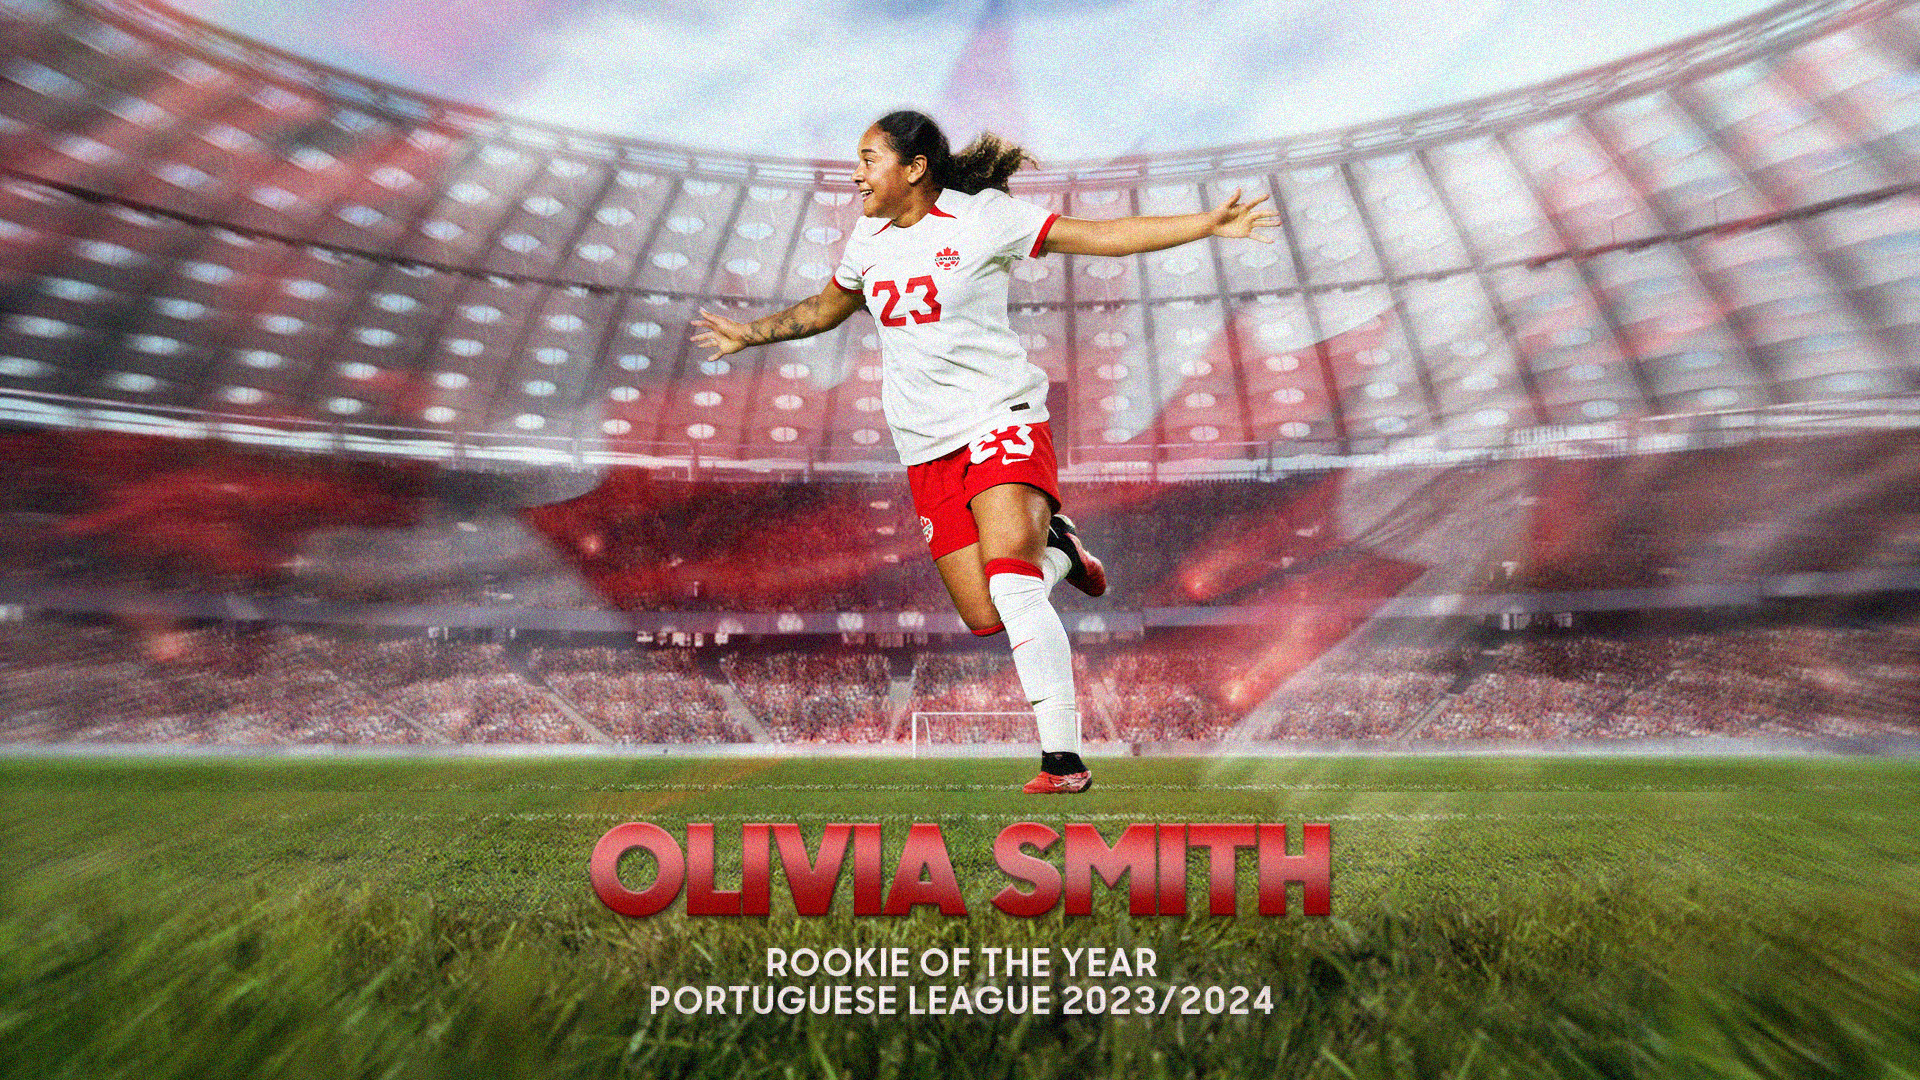 Olivia Smith, revelação em Portugal no Sporting CP